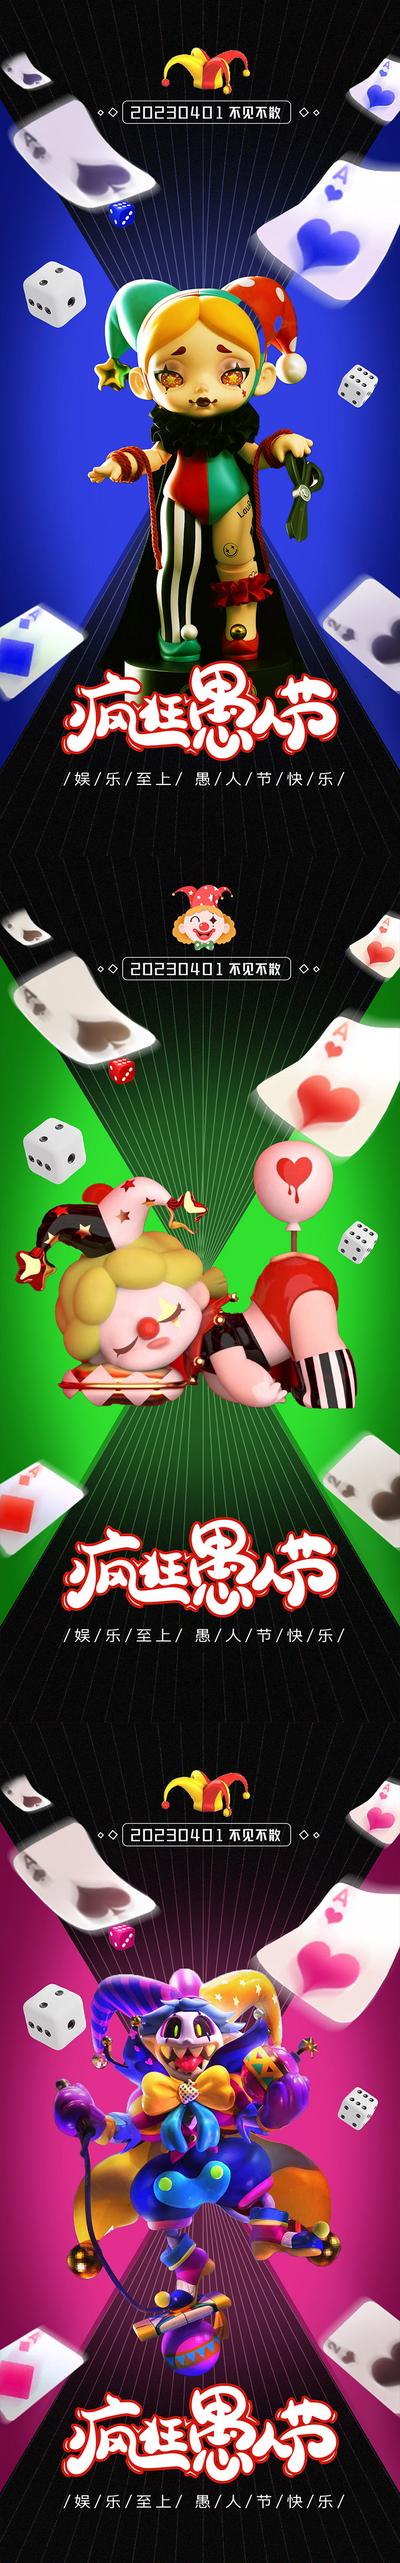 【南门网】广告 海波 节日 愚人节 41 小丑 扑克牌 纸牌 系列